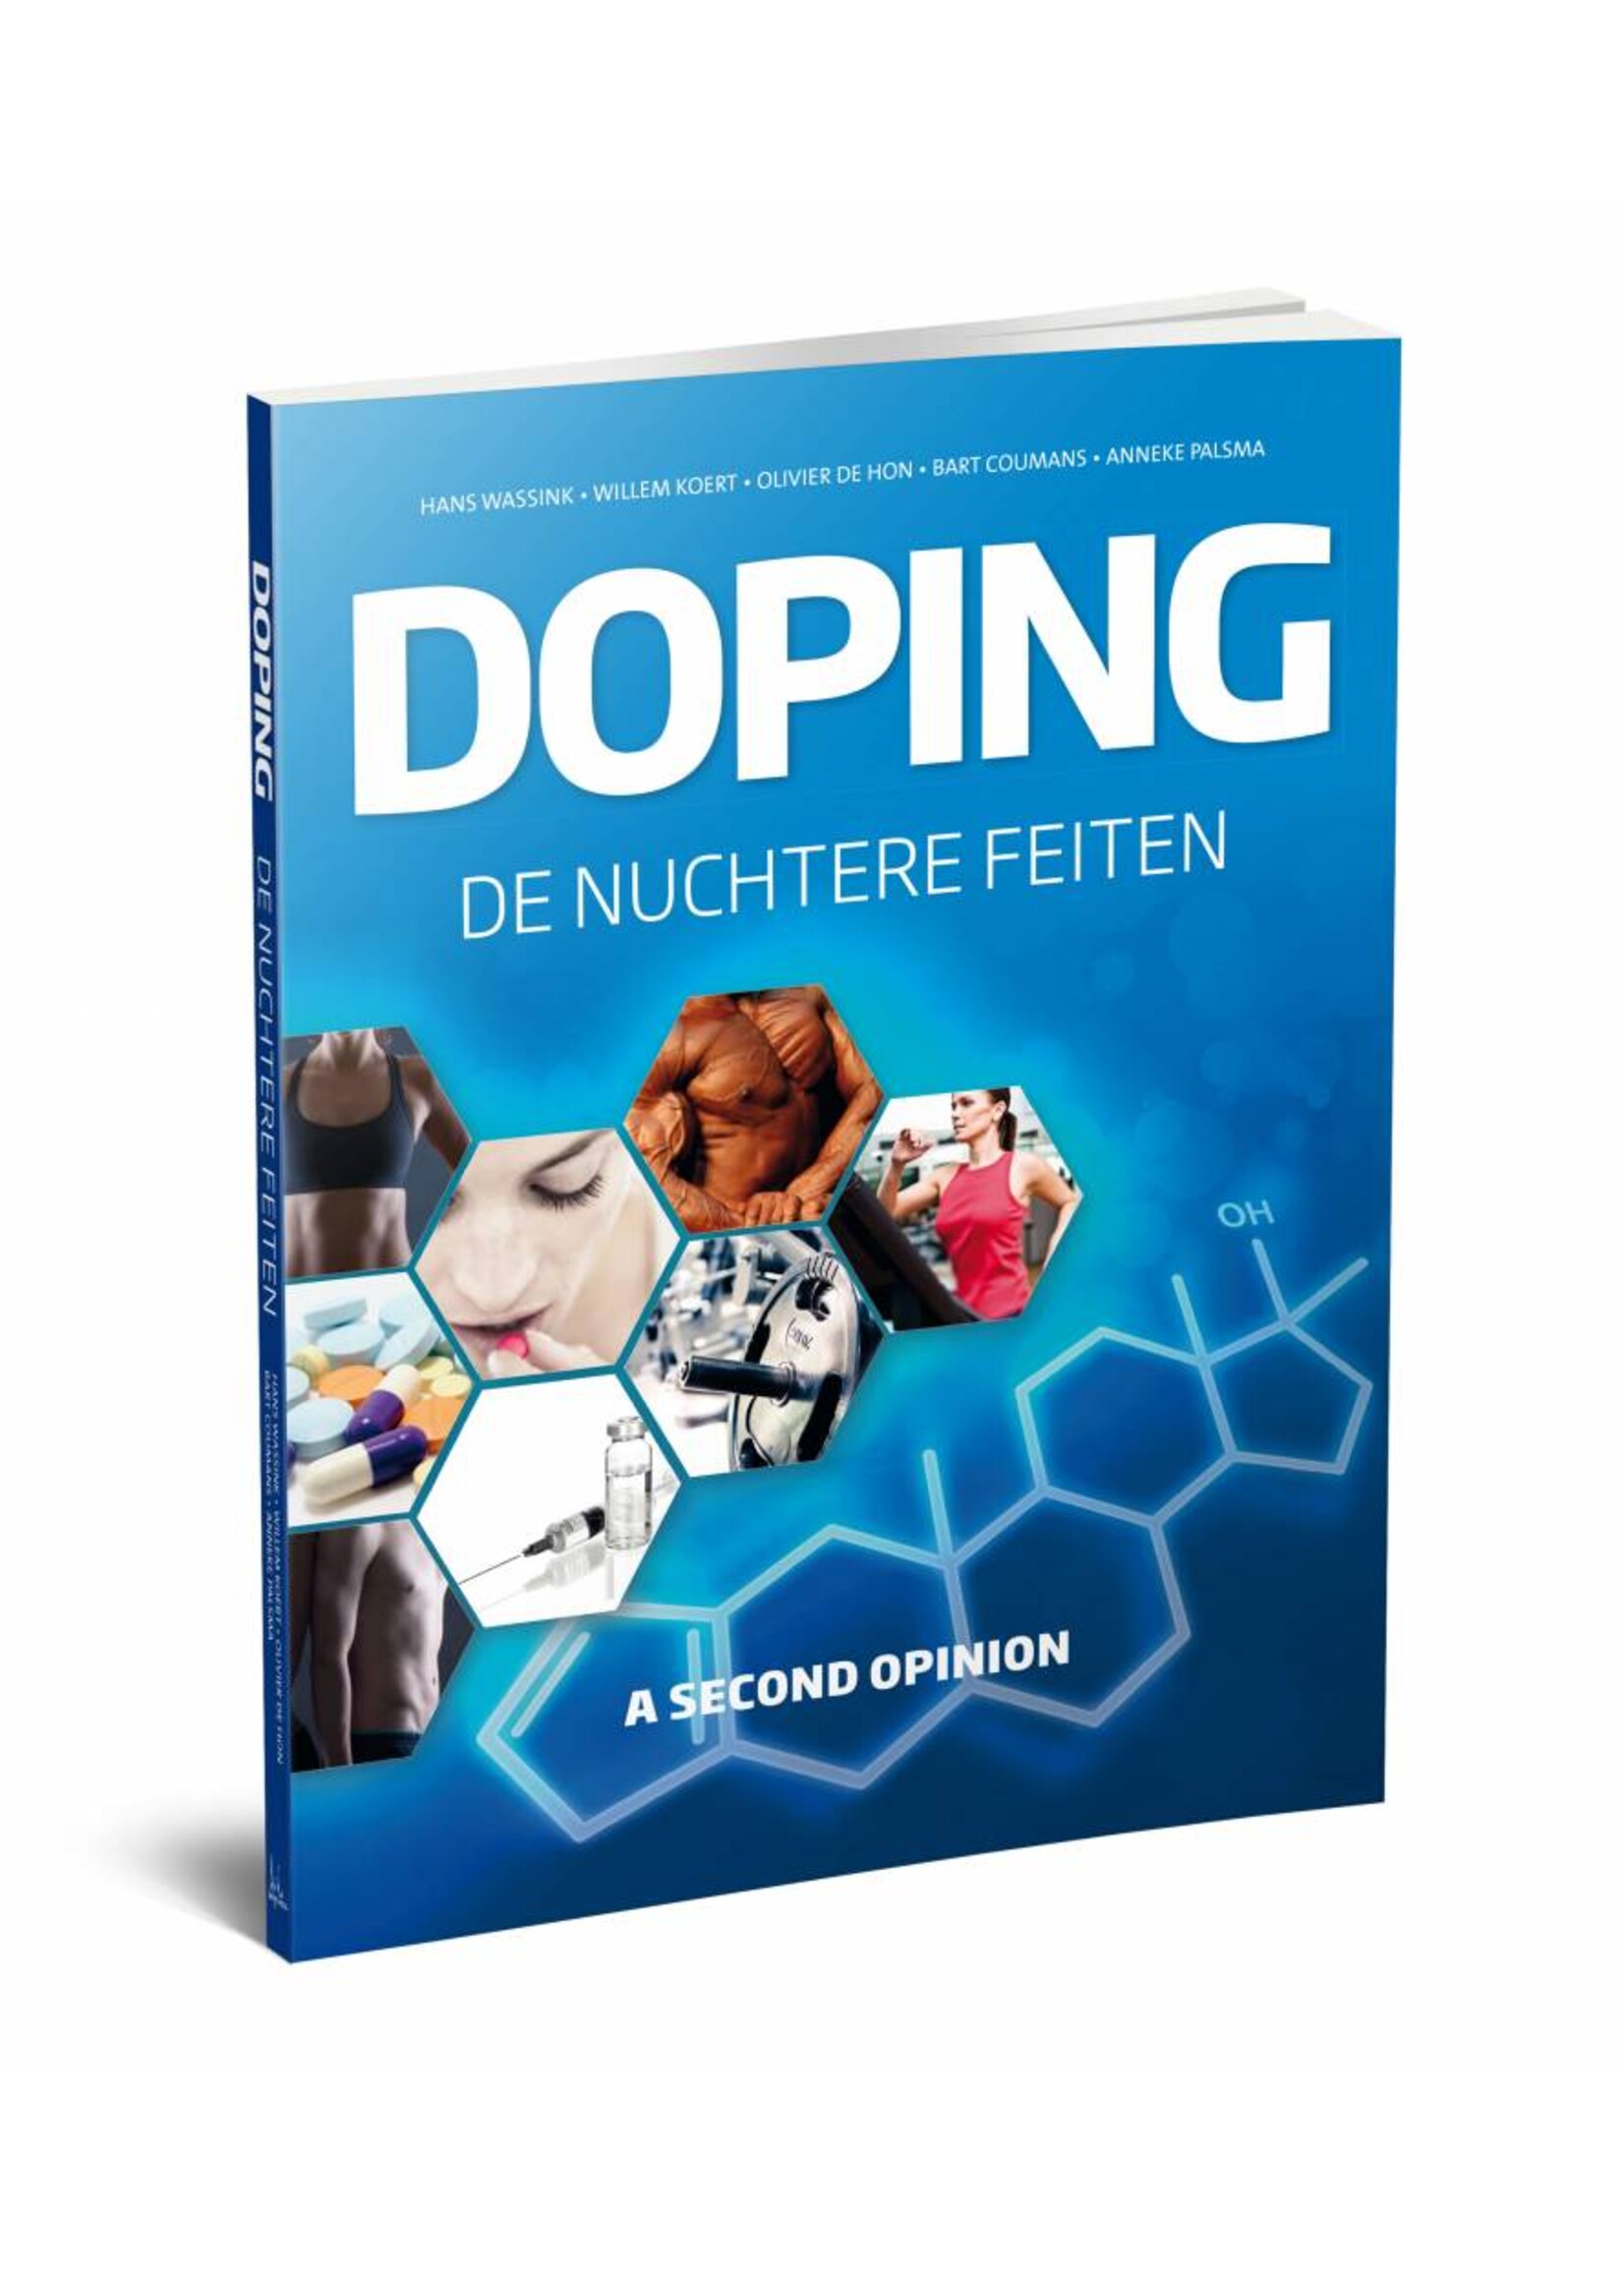 Doping, de nuchtere feiten